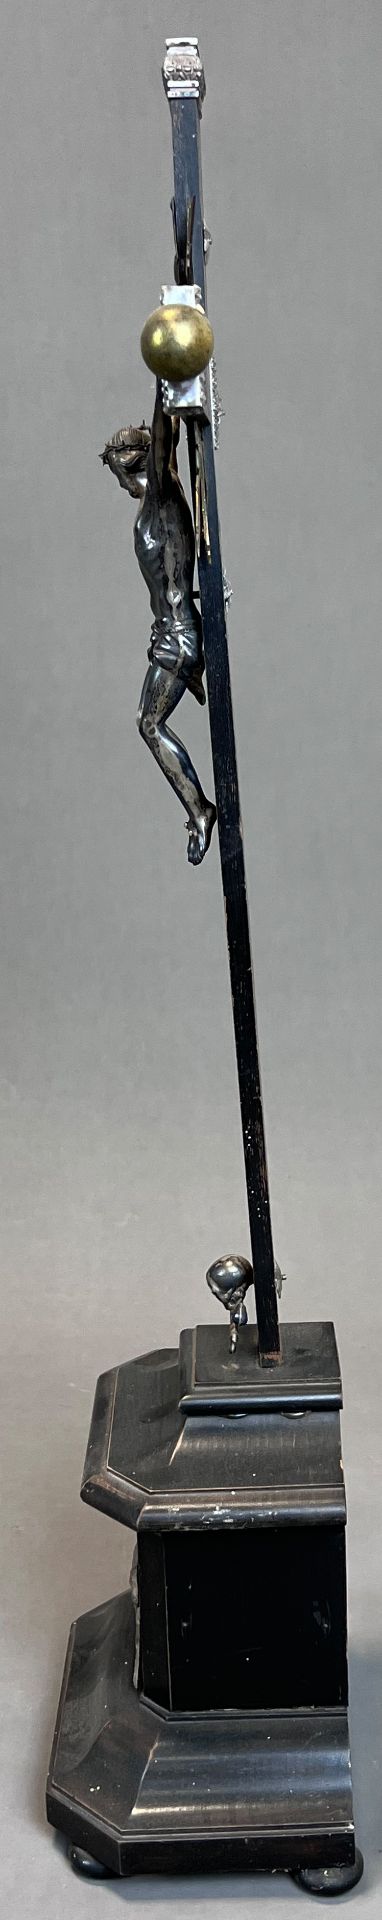 Standkreuz. Altarkreuz mit Metall-Applikationen. 19. Jahrhundert. Deutschland. - Bild 2 aus 9